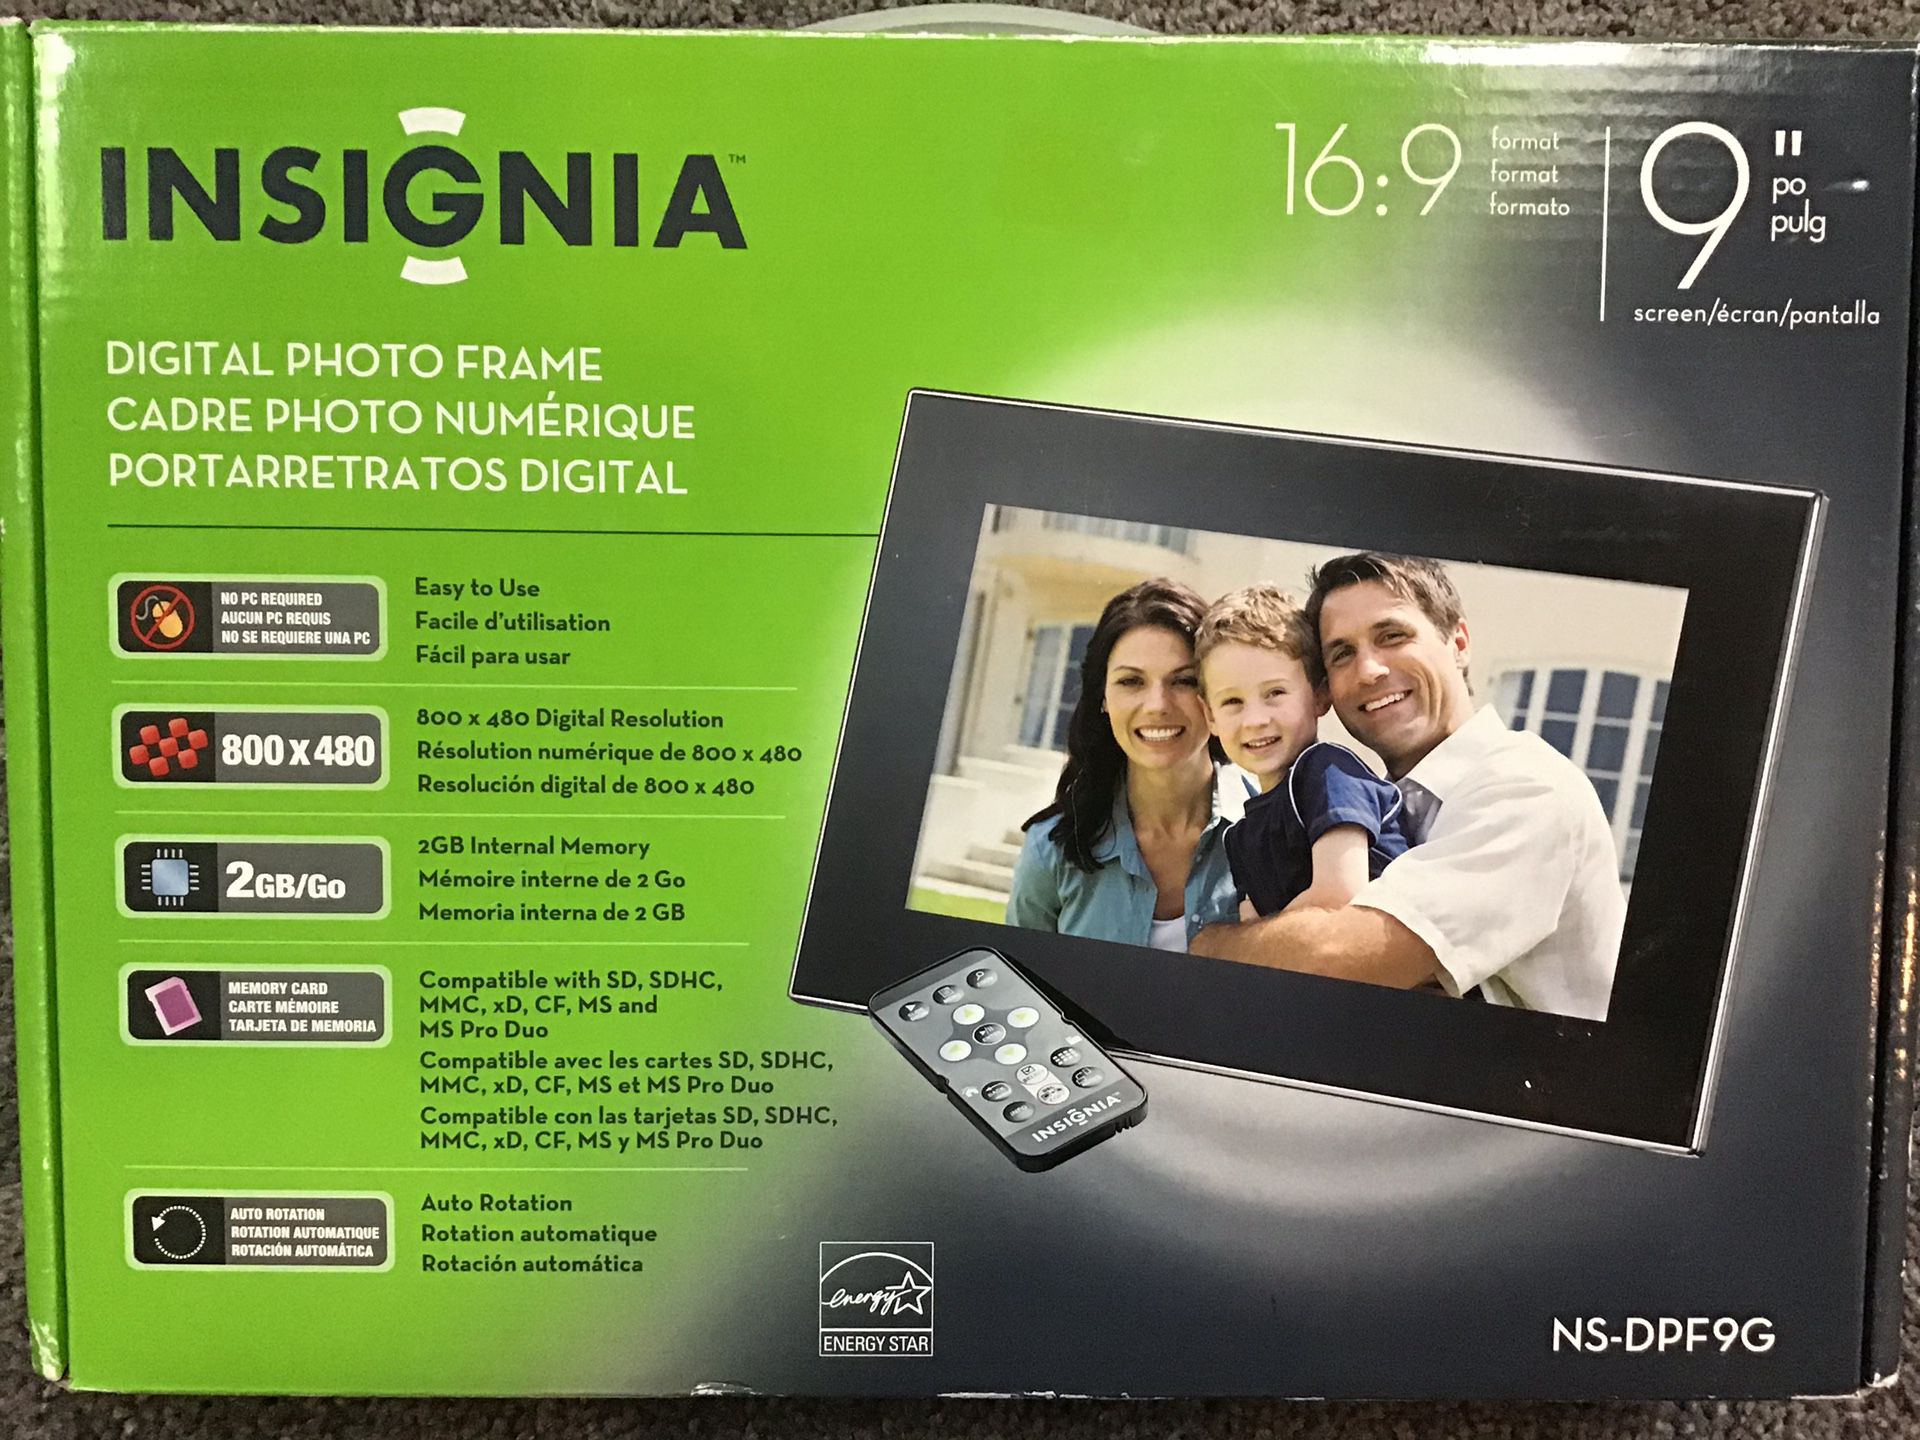 Insignia 9” digital picture frame